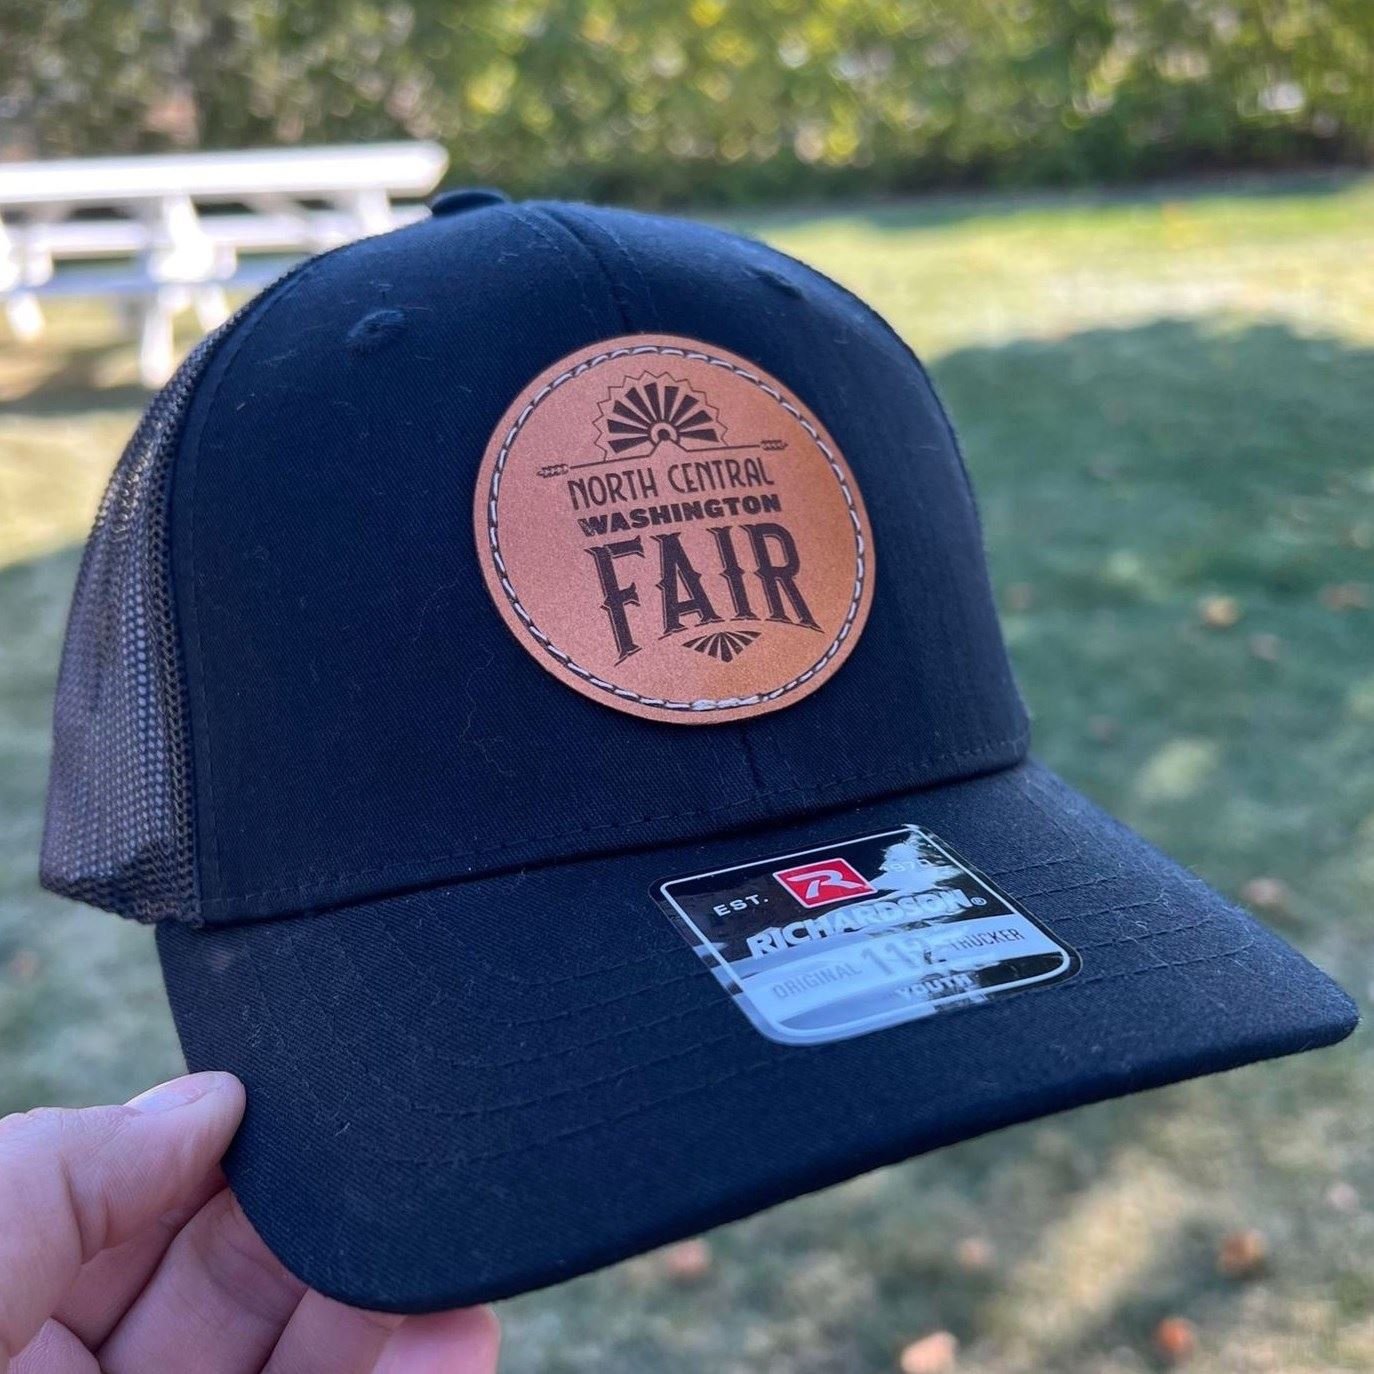 Youth Fair Hat